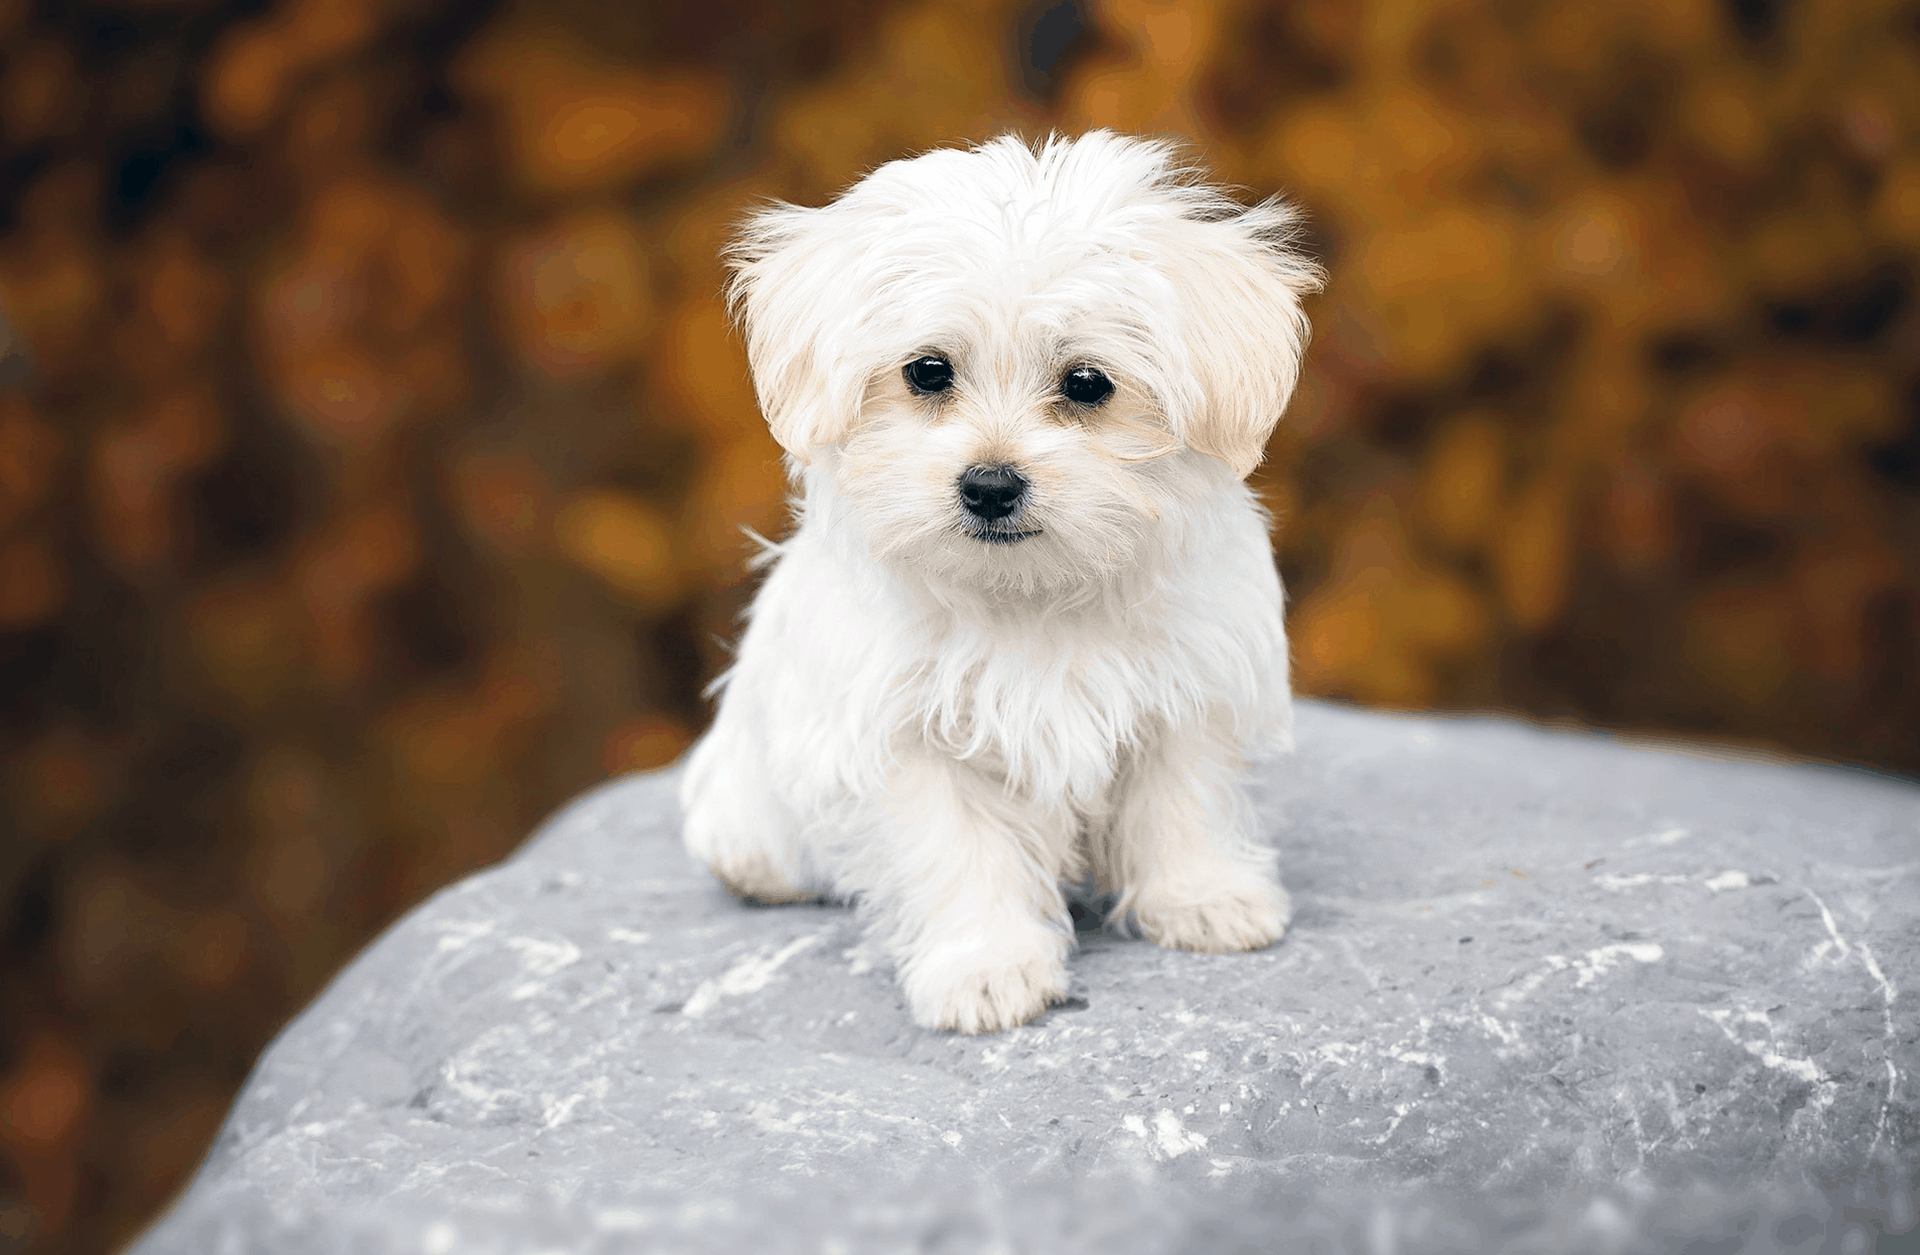 Amazoncom KylePet Cepillo para perros cepillo de doble cara para  mascotas con mango de bambú para perros y gatos pelo largo peine de aseo  para mascotas para eliminar desprendimientos enredos y pelaje